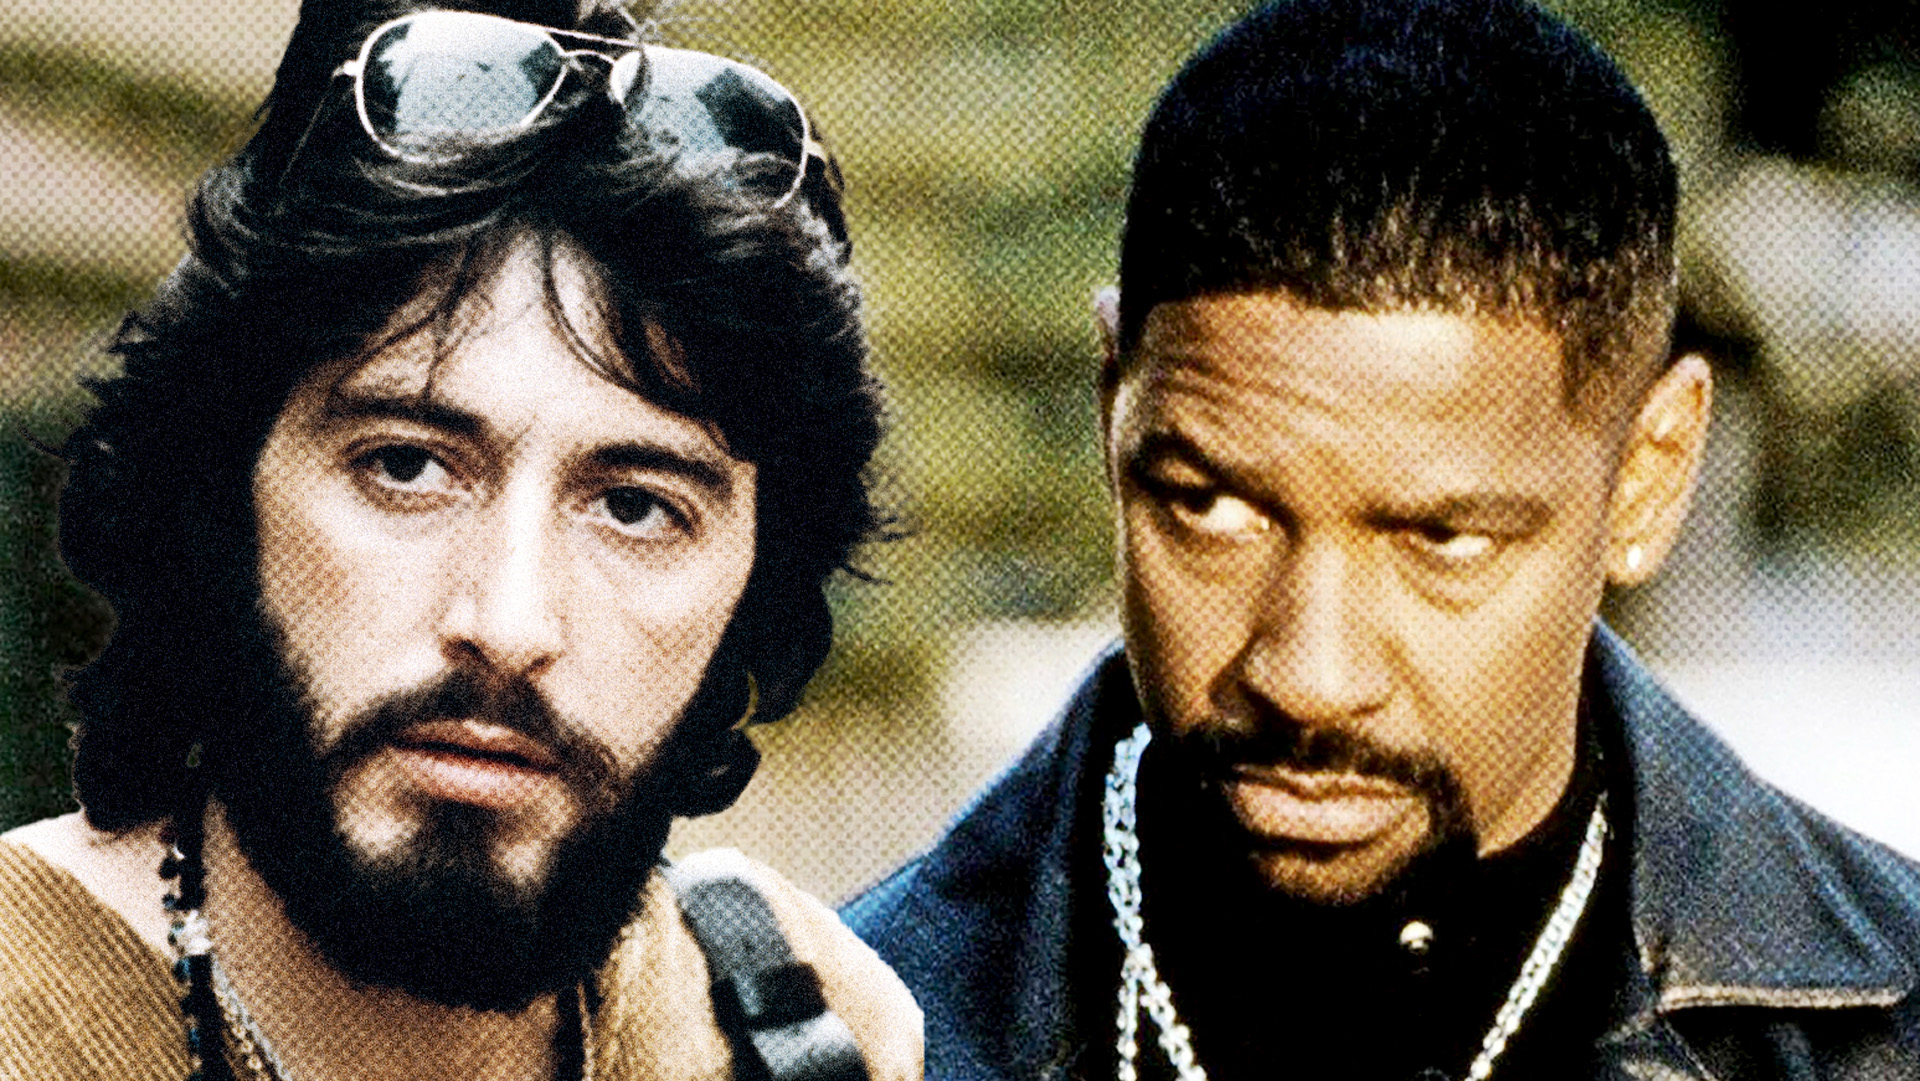 Corrupt cops: Serpico lead actor Al Pacino and Training Day star Denzel Washington